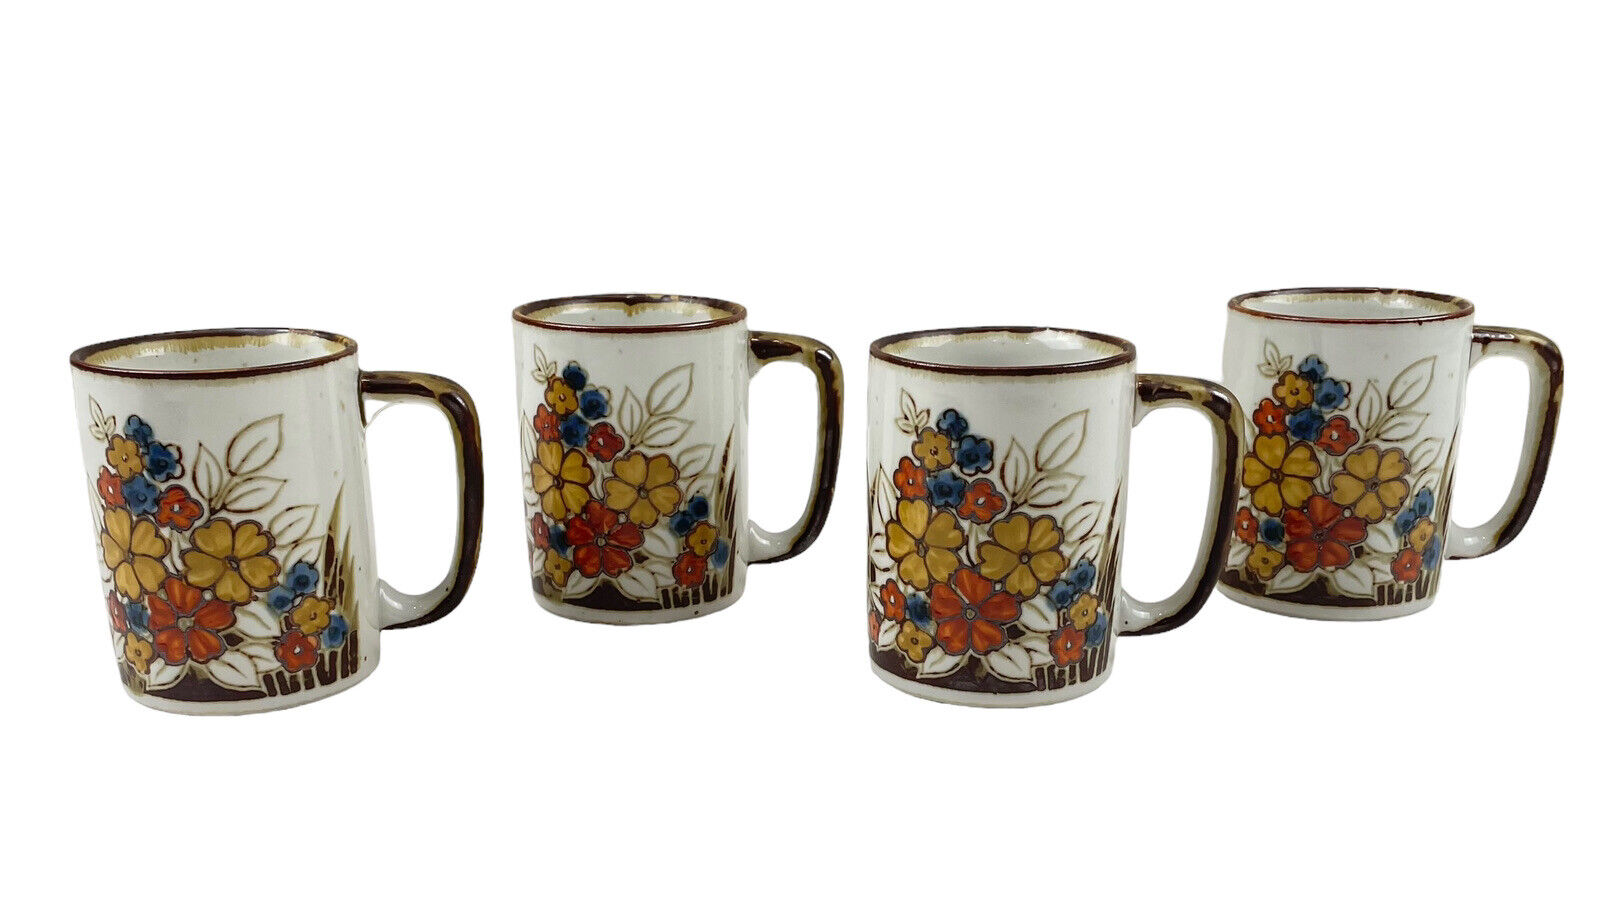 Vintage OTAGIRI Speckled Stoneware Coffee Mugs Tea Cups Floral Set of 4